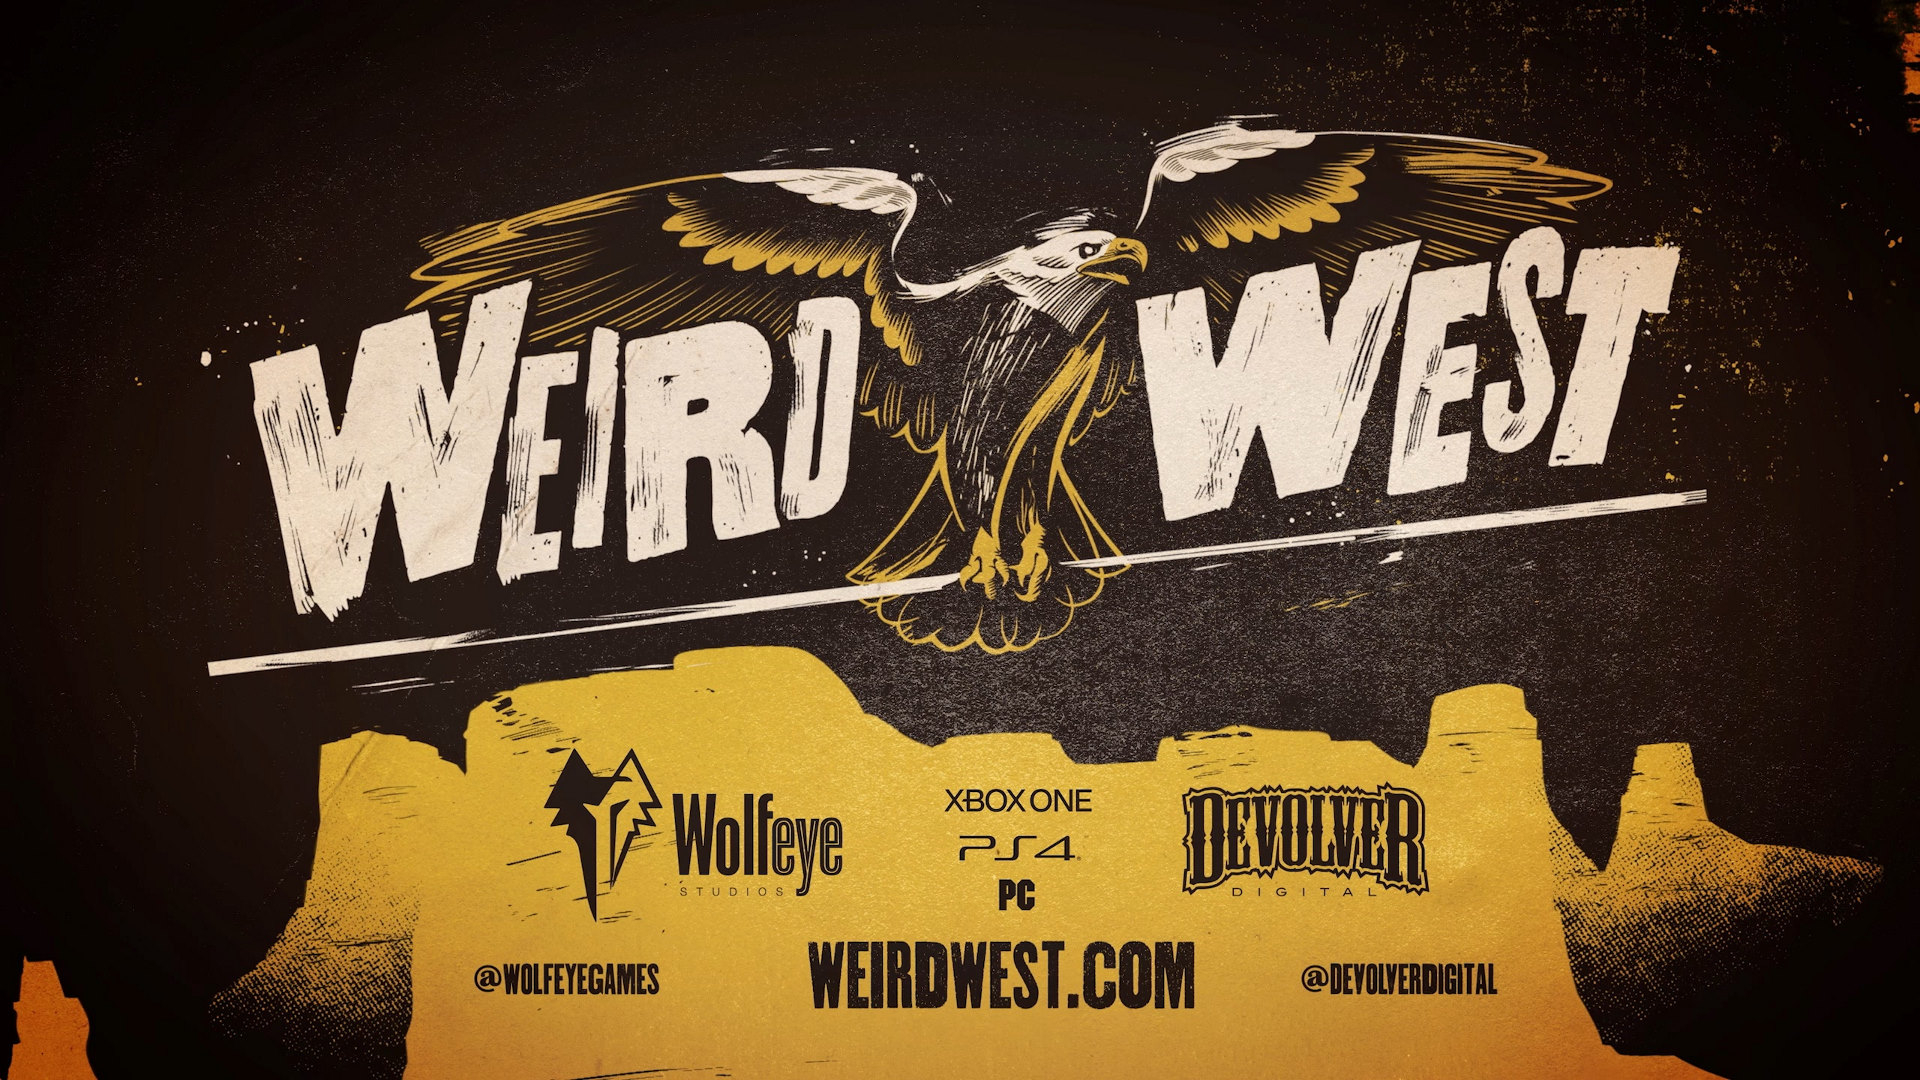 Релизный трейлер вестерна Weird West